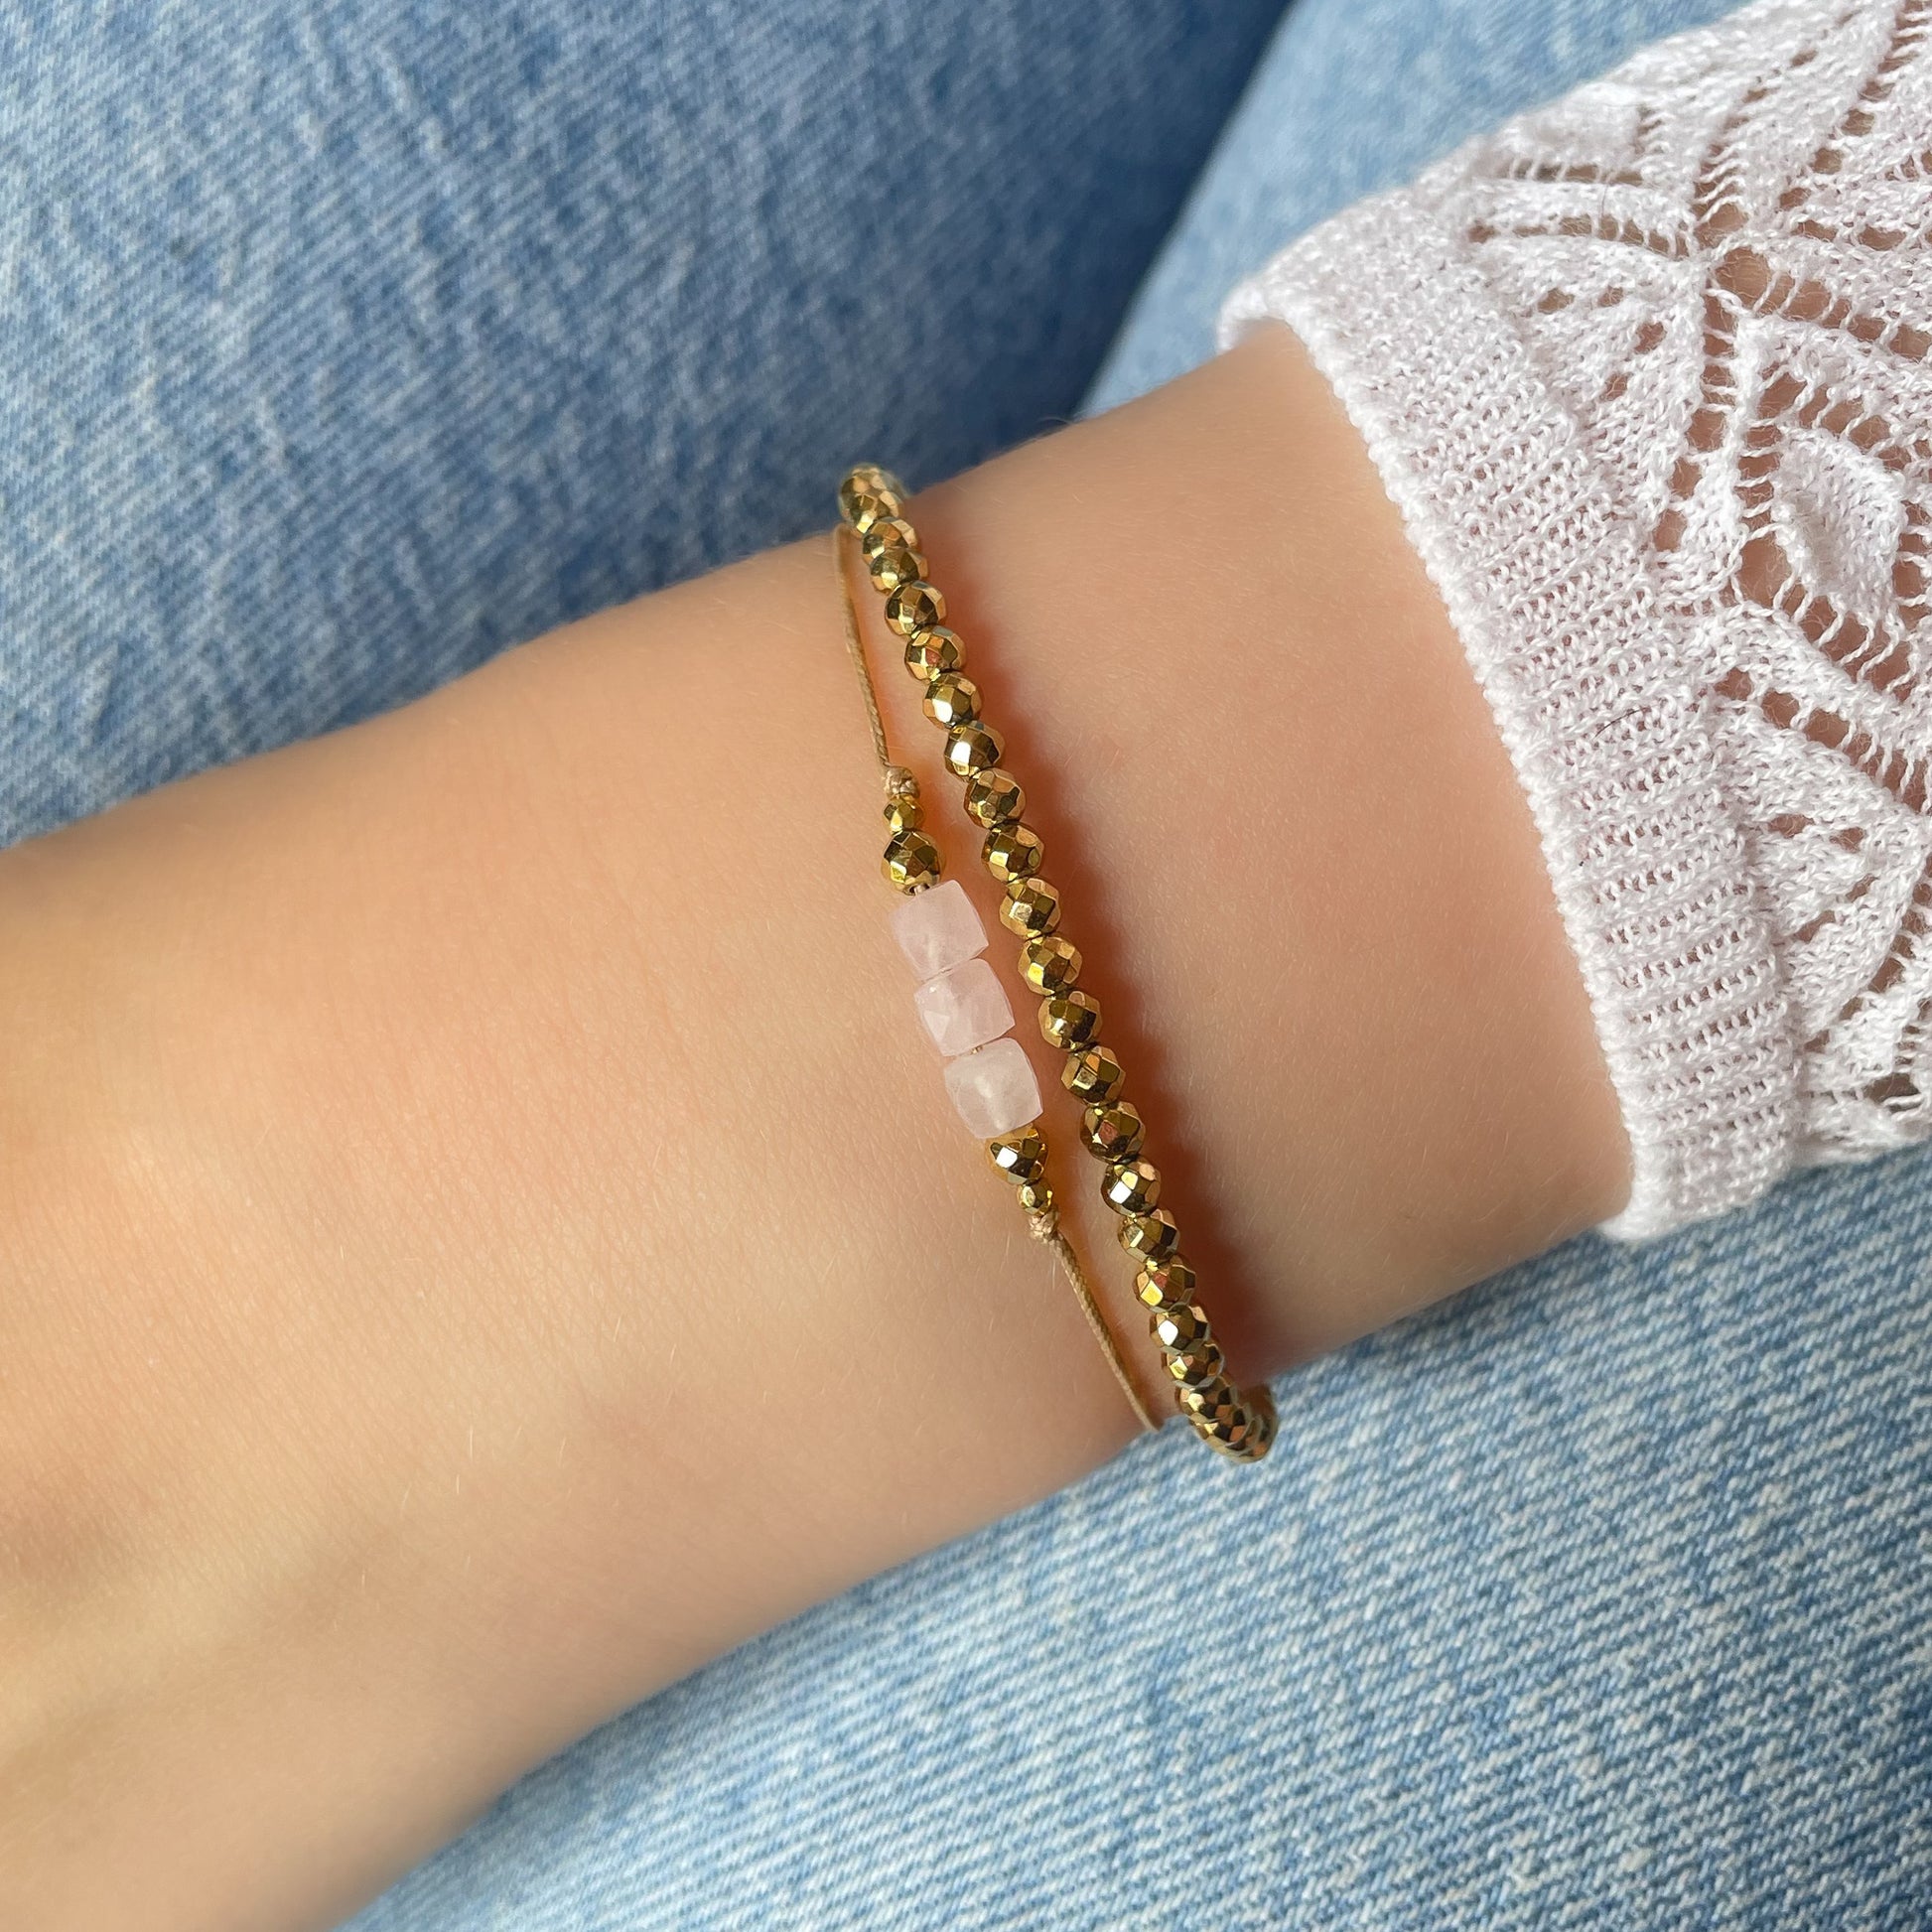 Duo de bracelets ajustables composés de perles de pierres fines naturelles en perles cubiques d'opale blanche rosée et d'hématite dorée. Les bracelets peuvent se porter indépendamment.